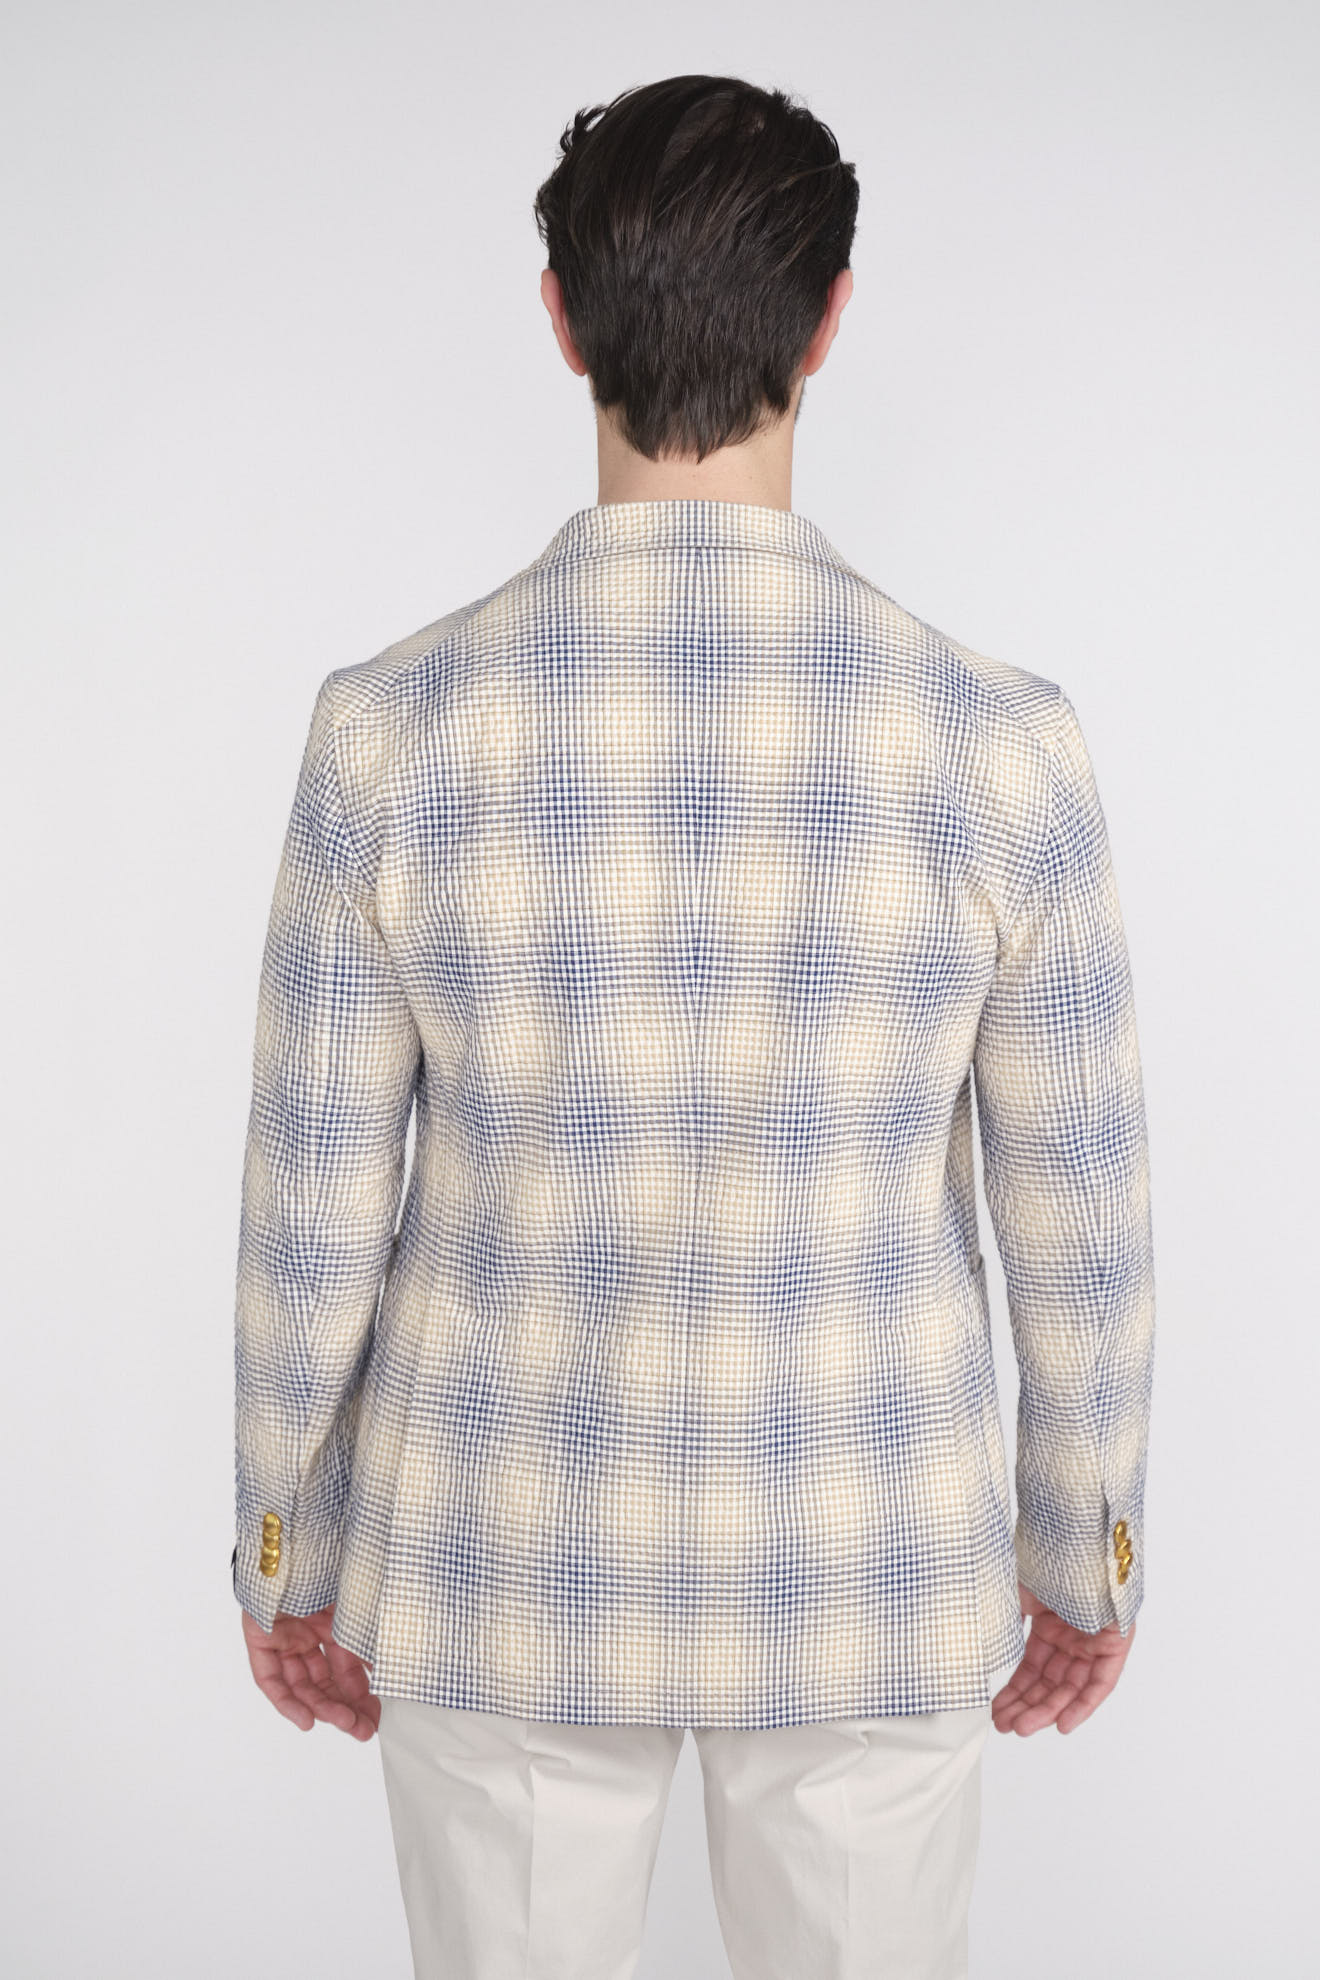 Tagliatore Cape Jacket – Locker geschnittene Jacke mit tief eingesetzten Ärmeln blau 50